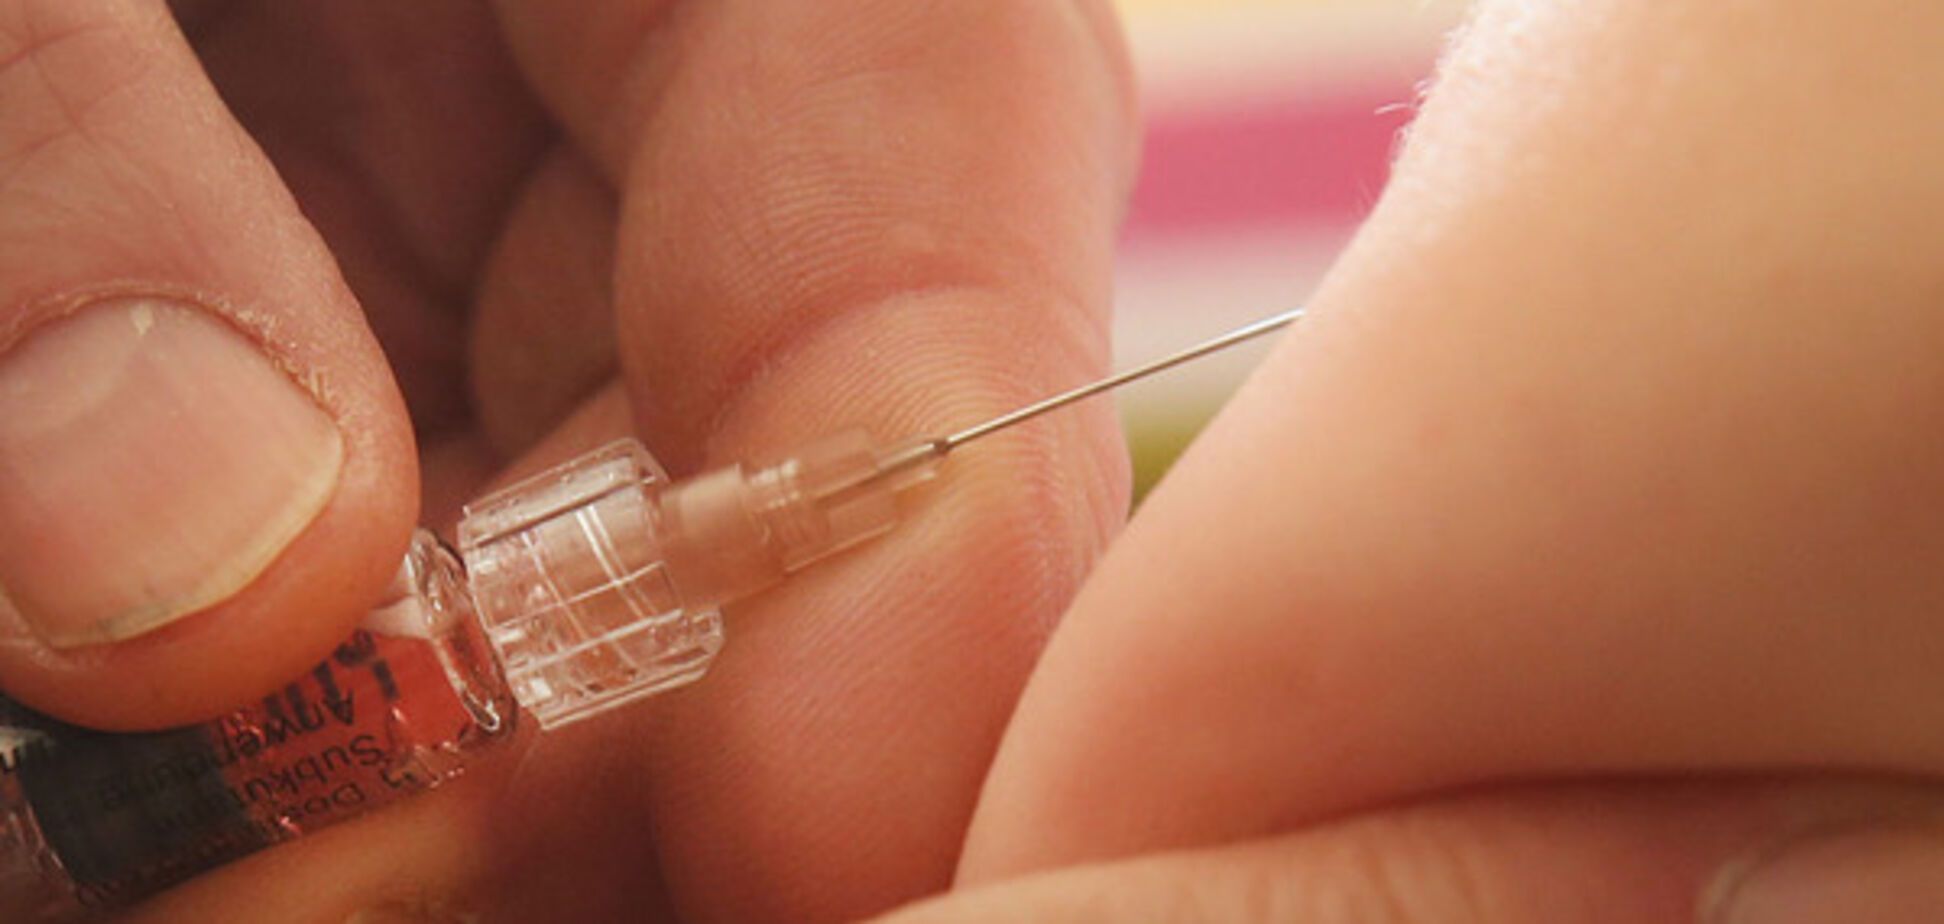 Европейская комиссия одобрила вакцину от менингококковой инфекции